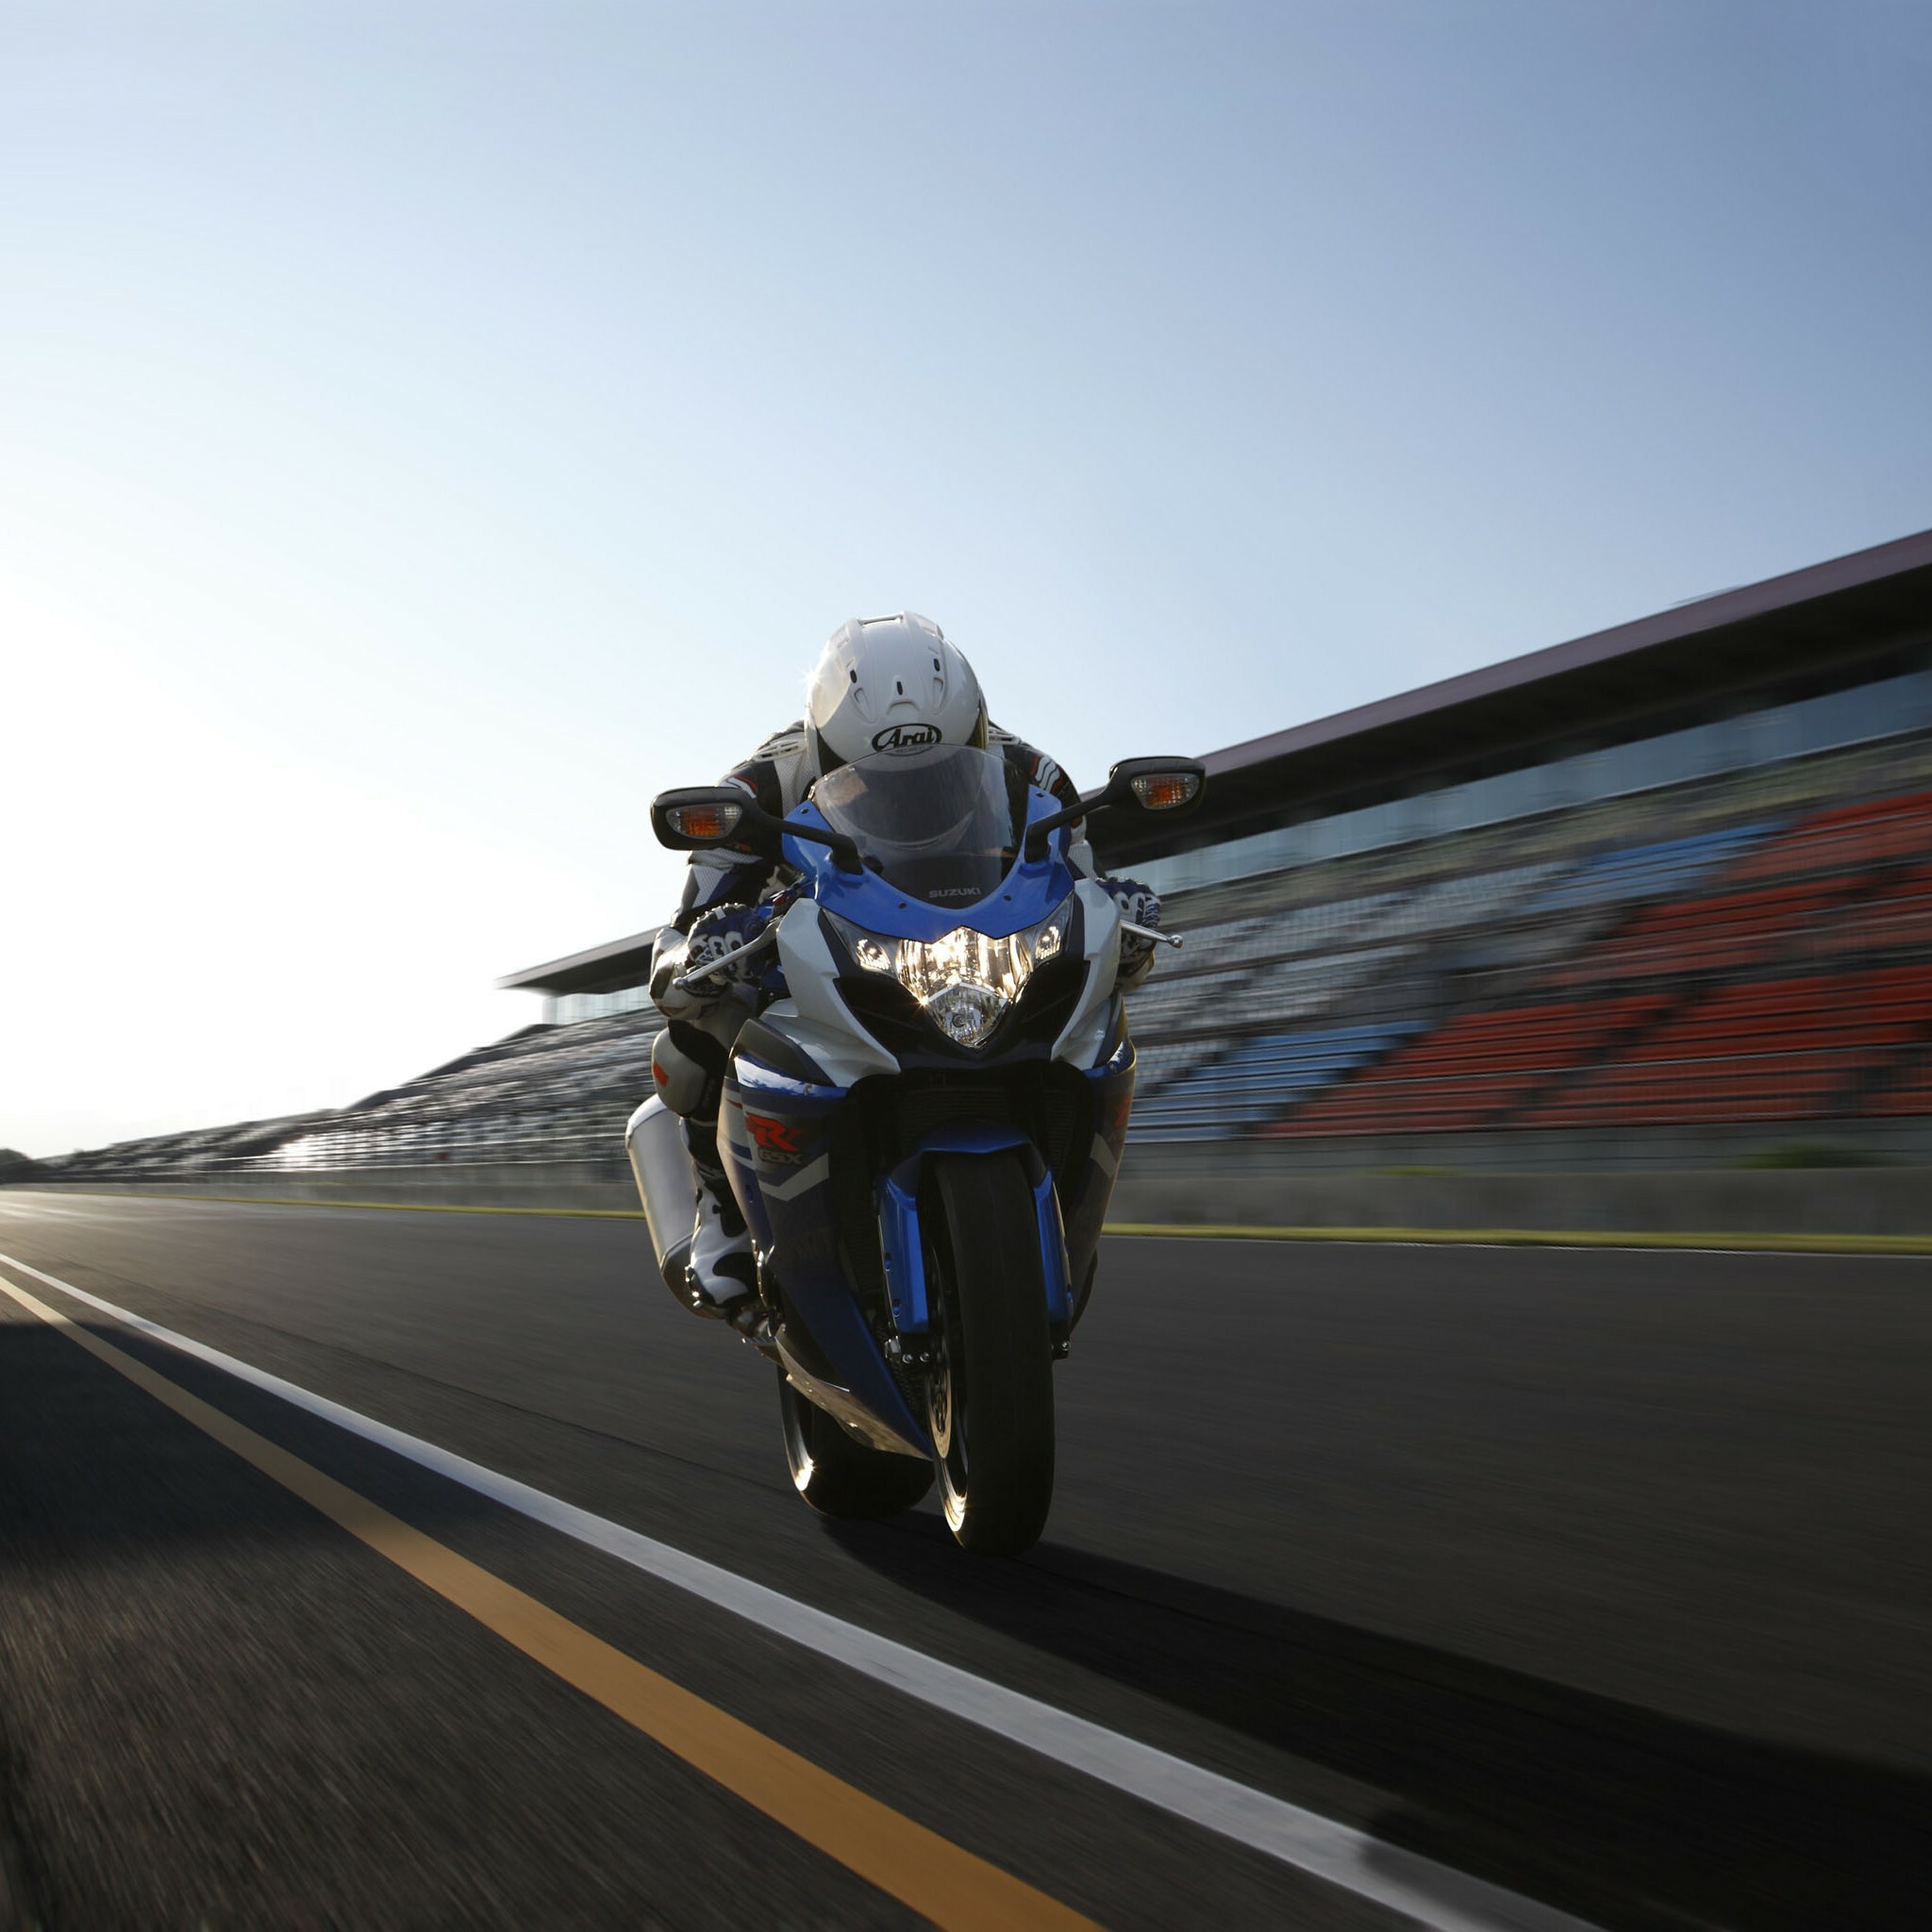 GSX-R: Gixxer 1000, A supersport motorcycle made by Suzuki. 2050x2050 HD Wallpaper.